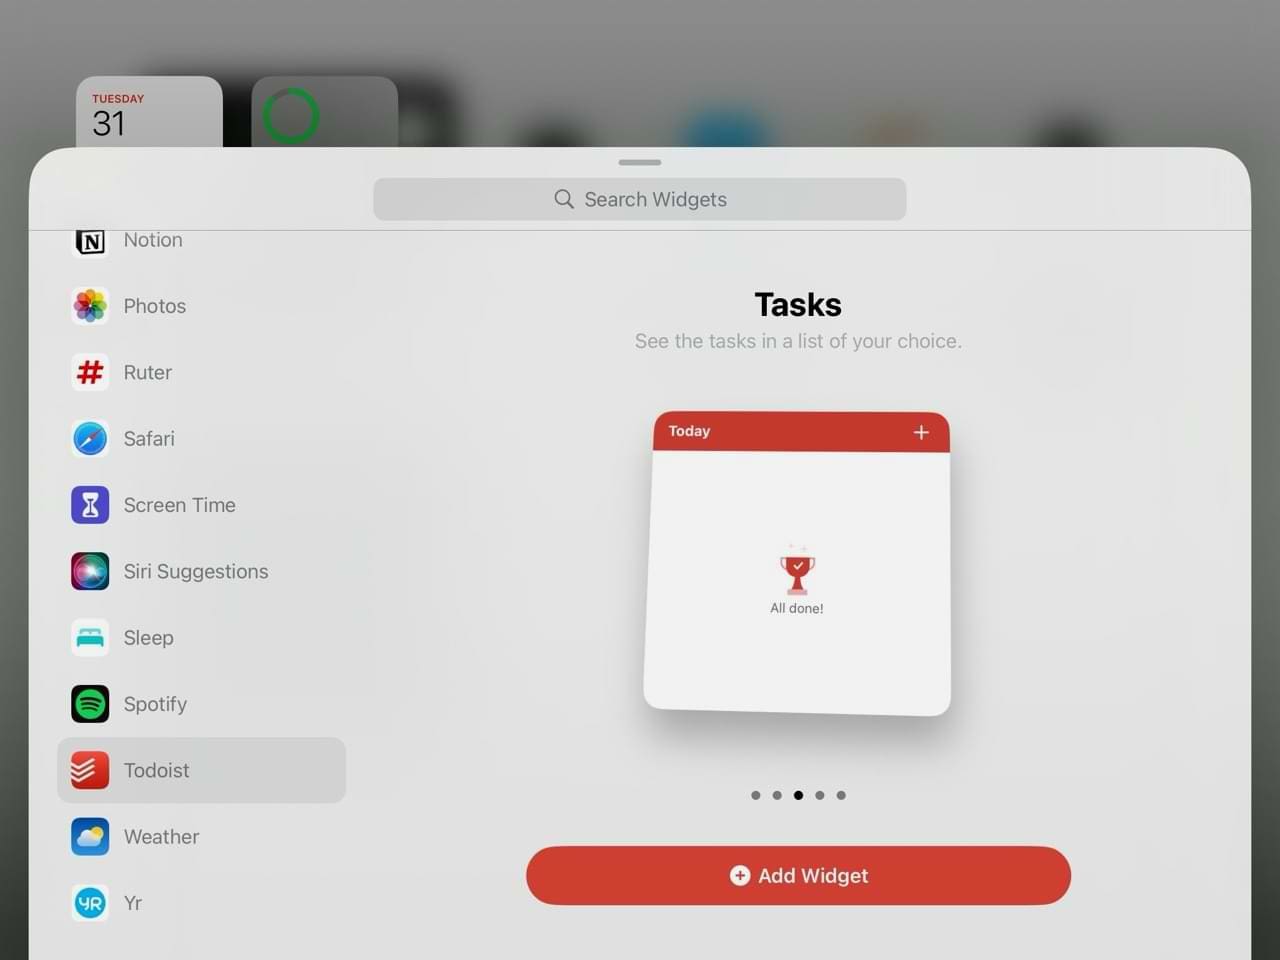 Add a new widget on iPad